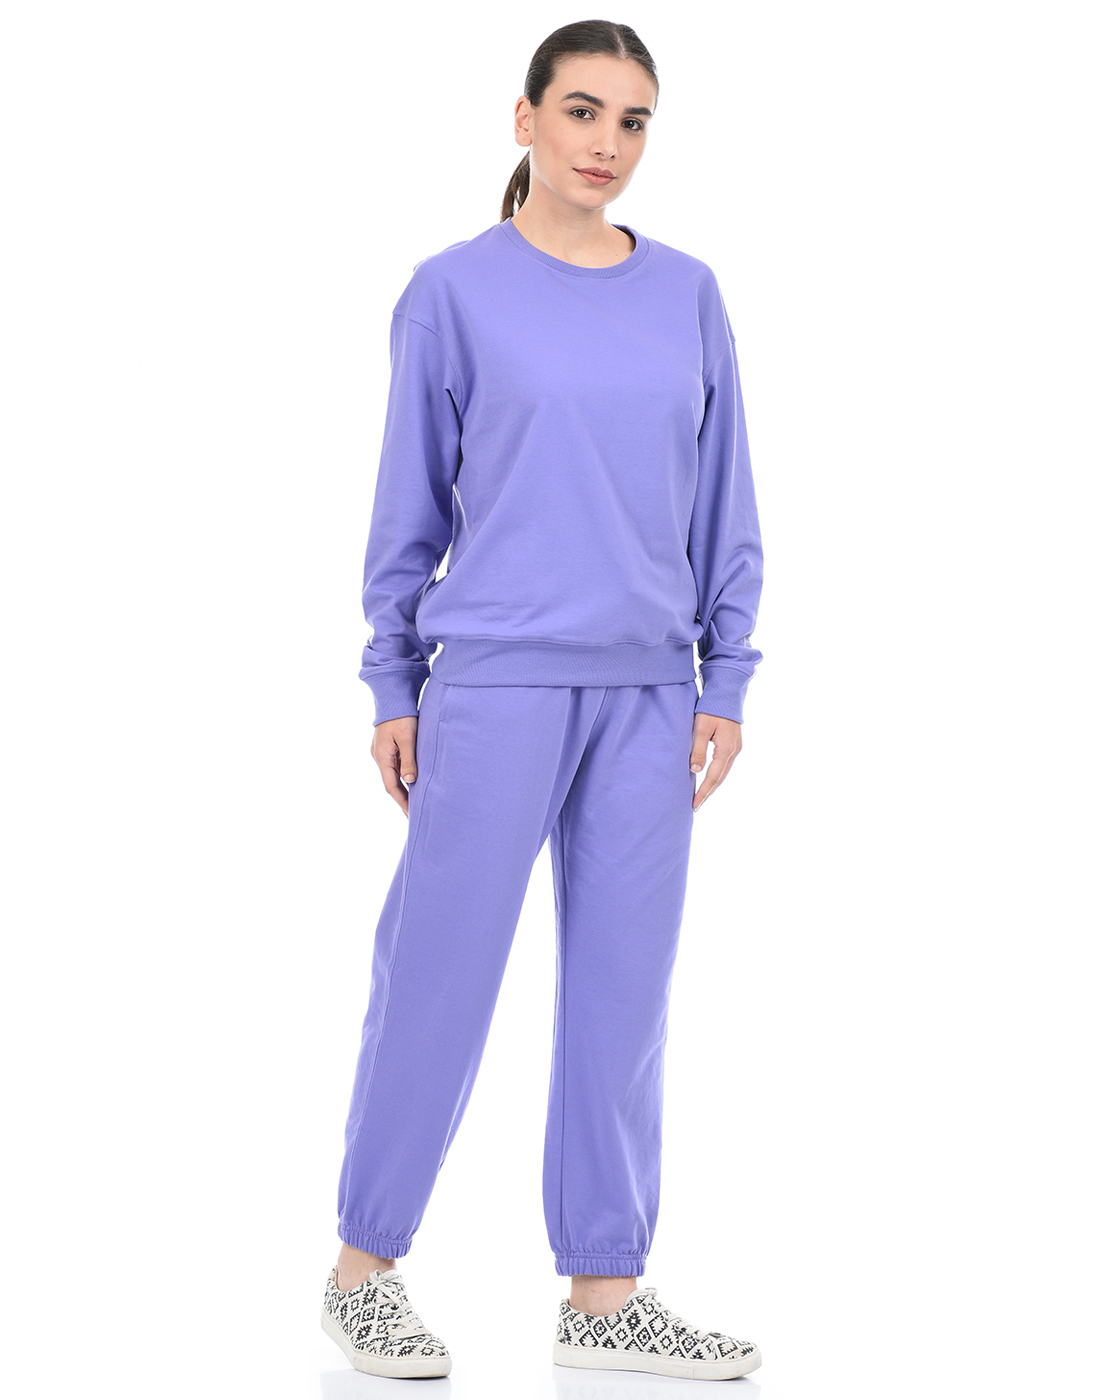 ONEWAY Women Solid Purple Loungewear